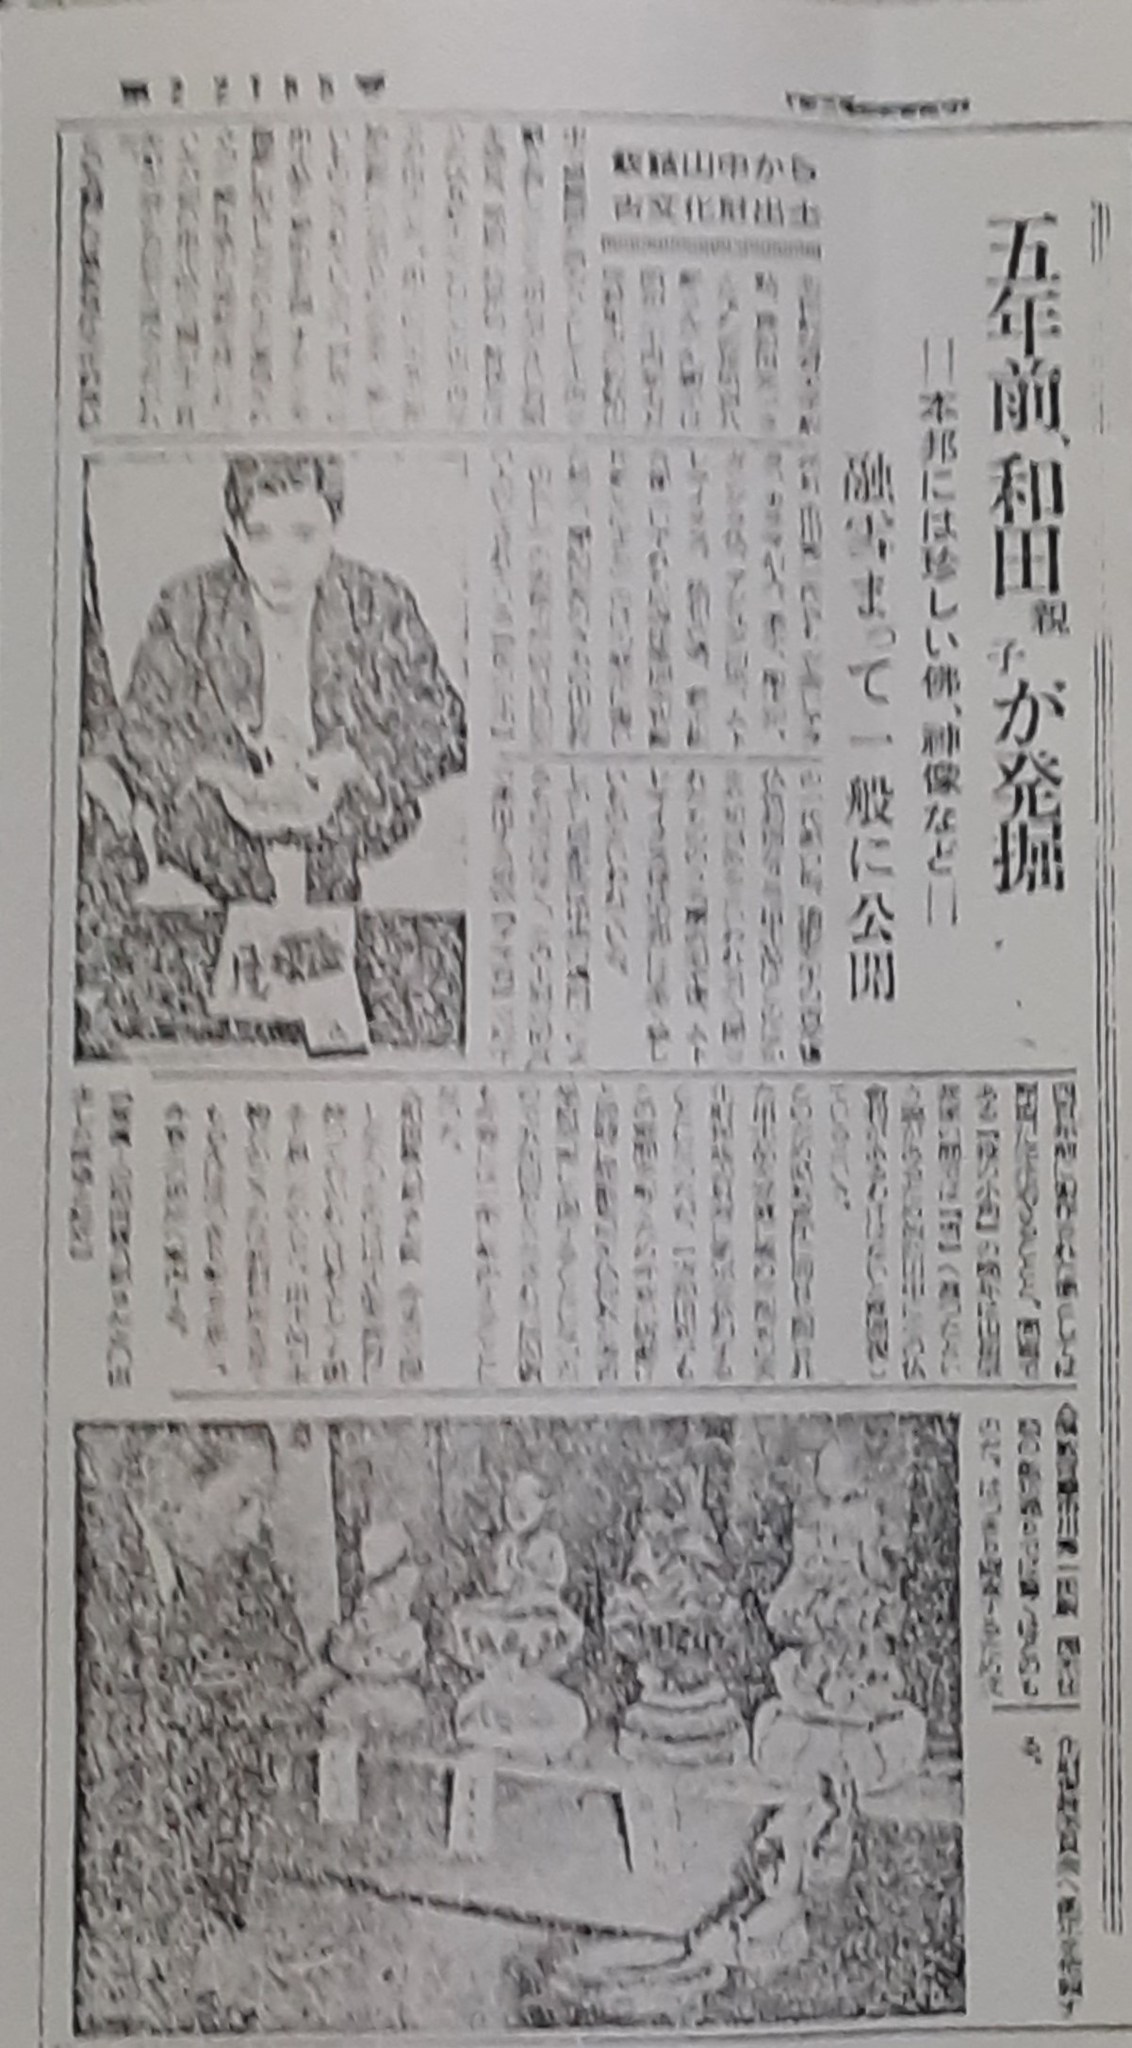 【写真】『東奥日報』昭和29年2月14日付記事